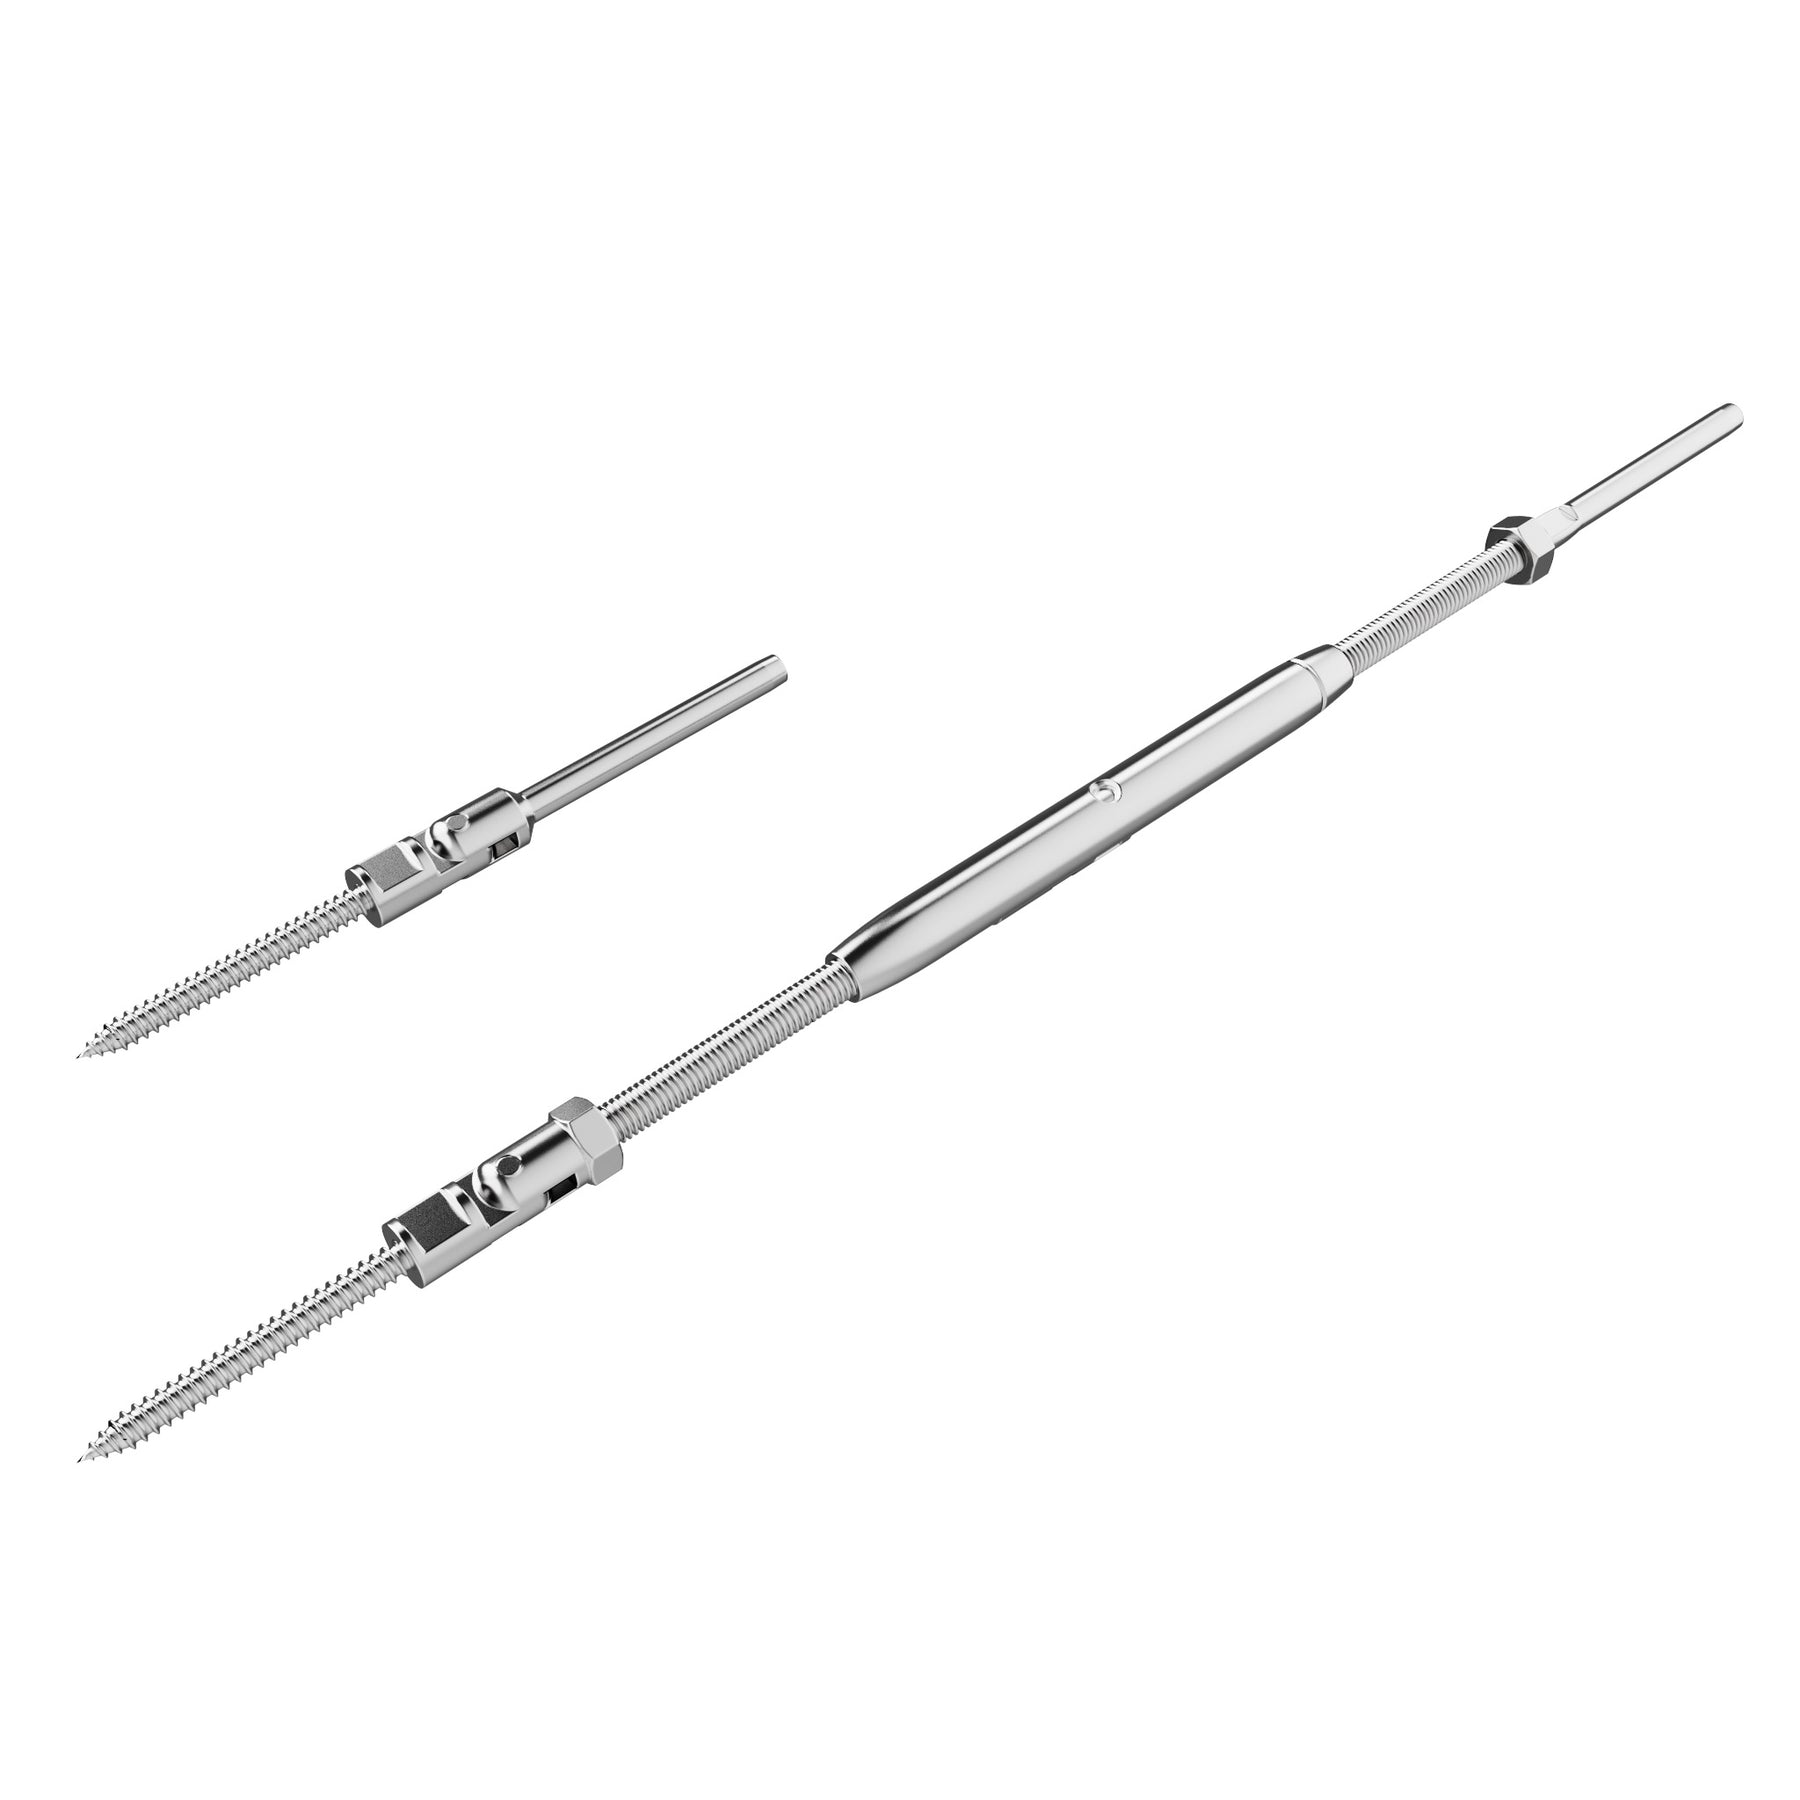 STLX-CC009 1/8" Cable Hardware Kit - Adjustable Angle Lag Screws Turnbuckle Kit